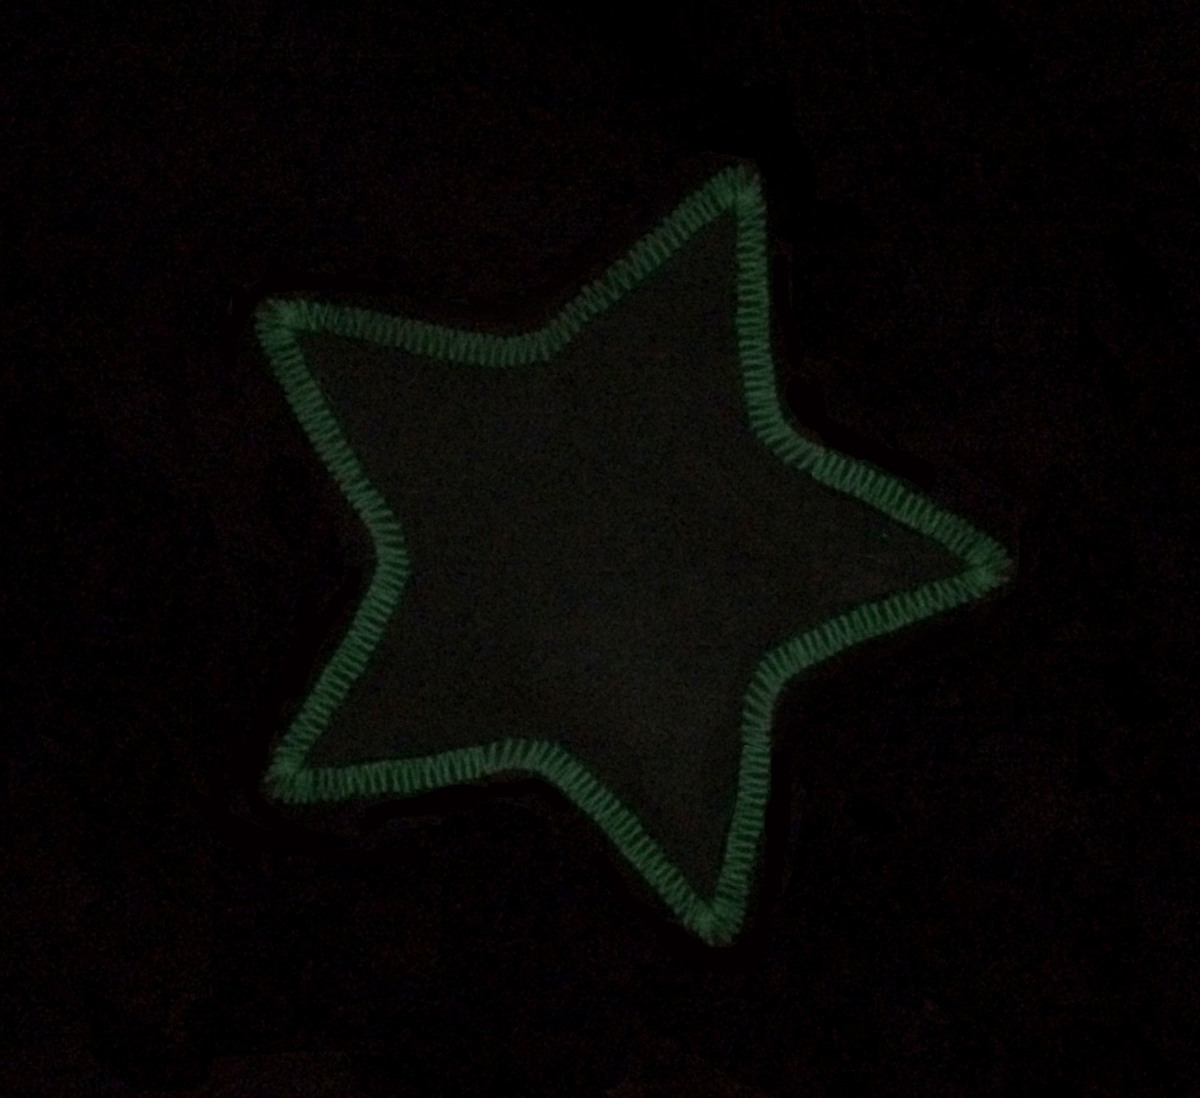 Appliquéd fabric star